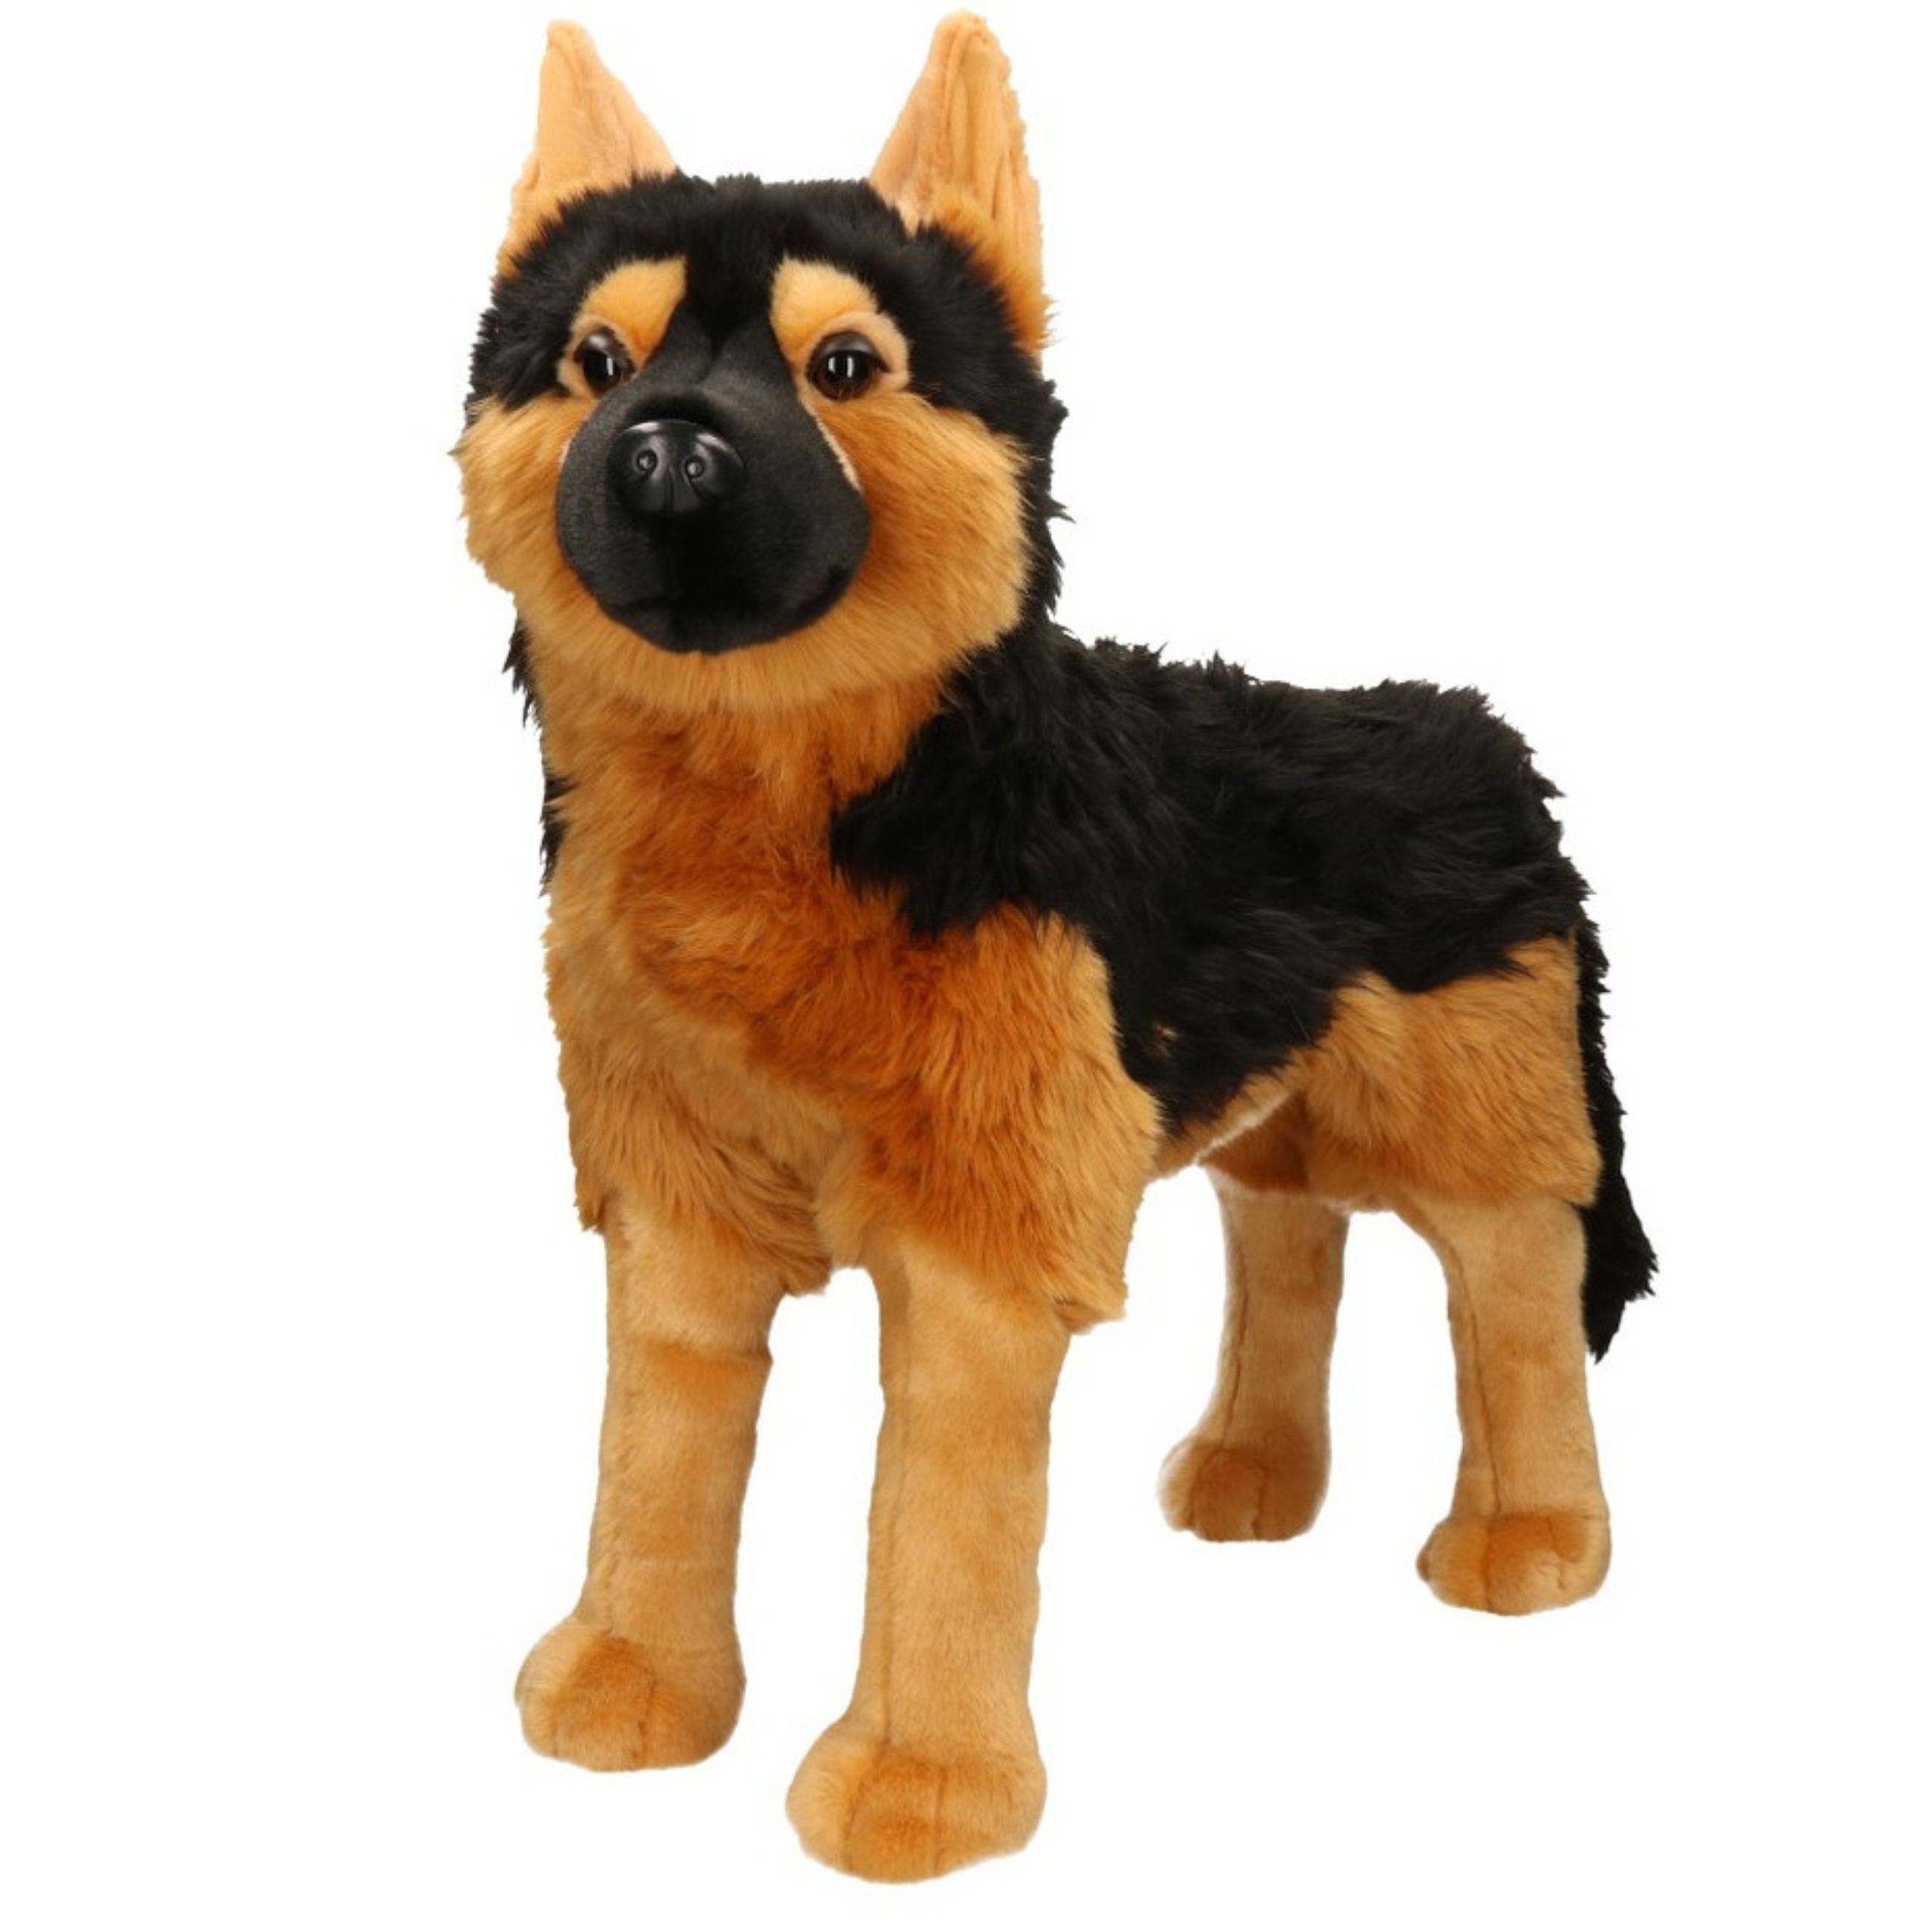 XL Knuffel Duitse Herder hond bruin-zwart 53 cm knuffels kopen